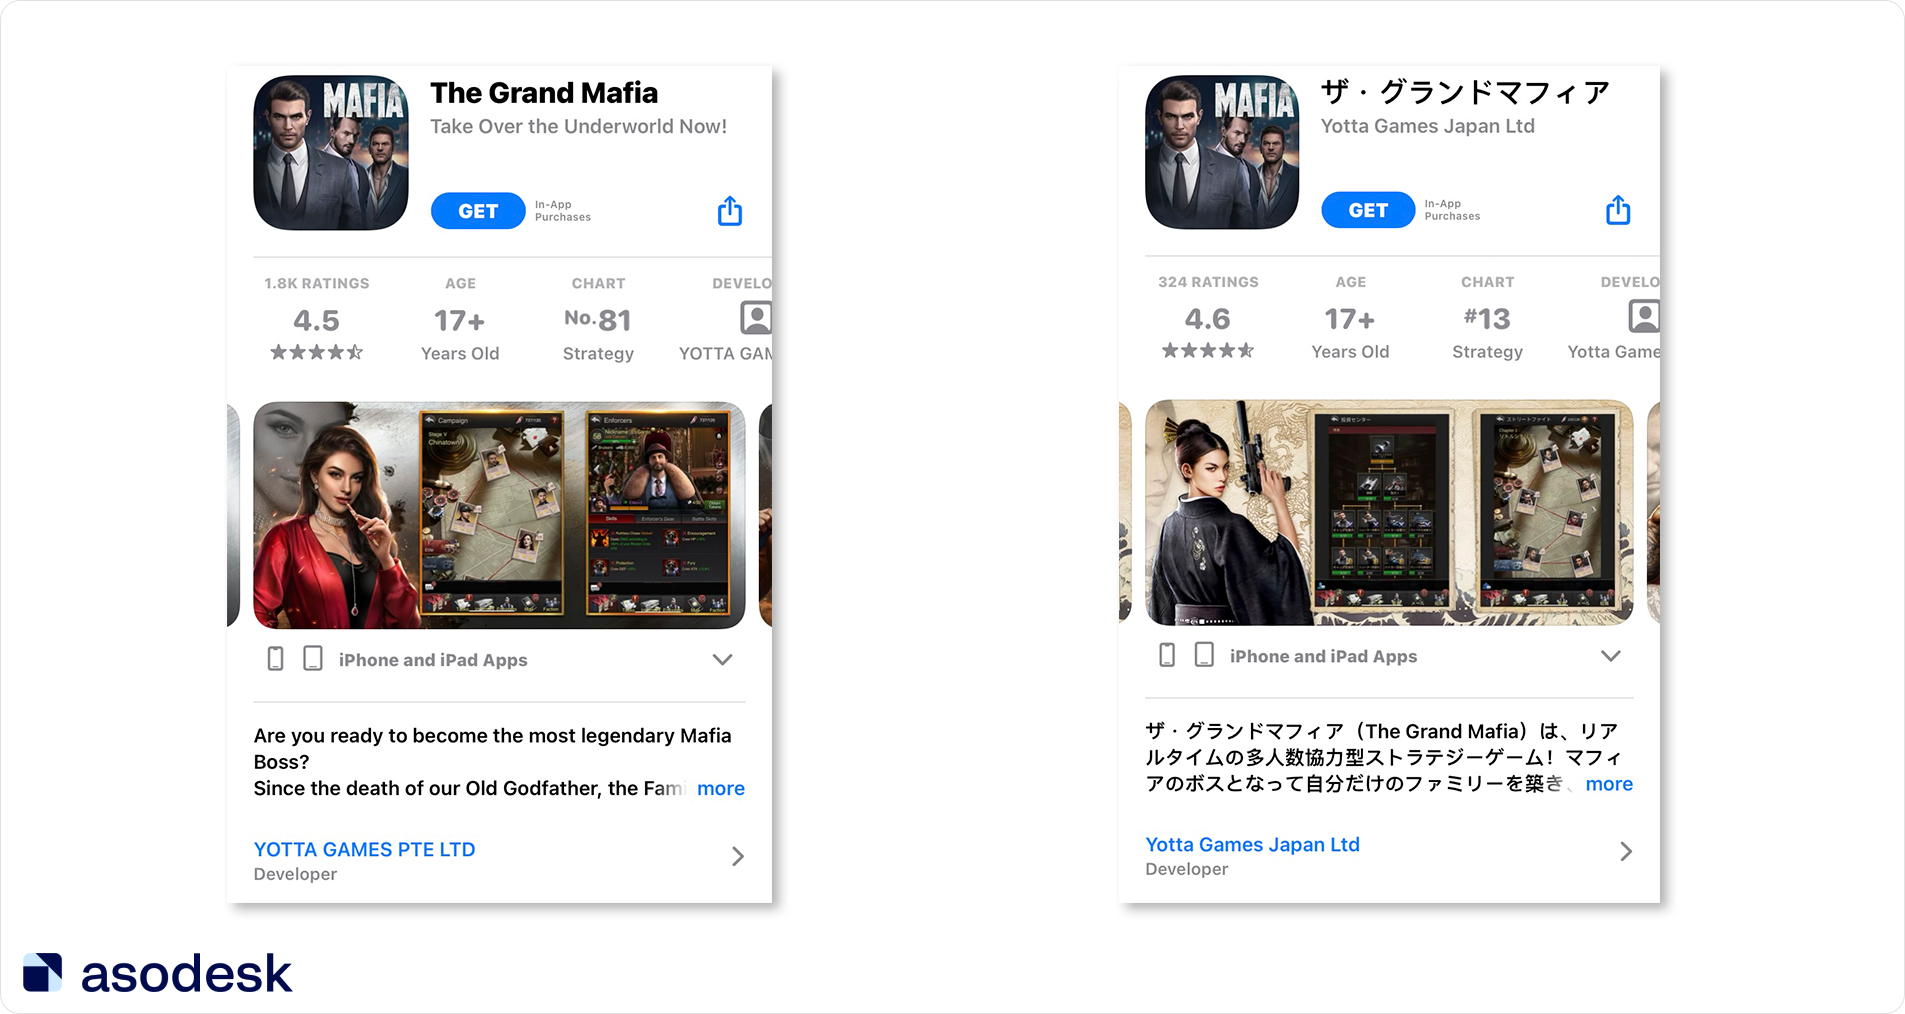 Разработчик добавил на скриншоты элементы японской культуры, а также переодел героя в национальную одежду